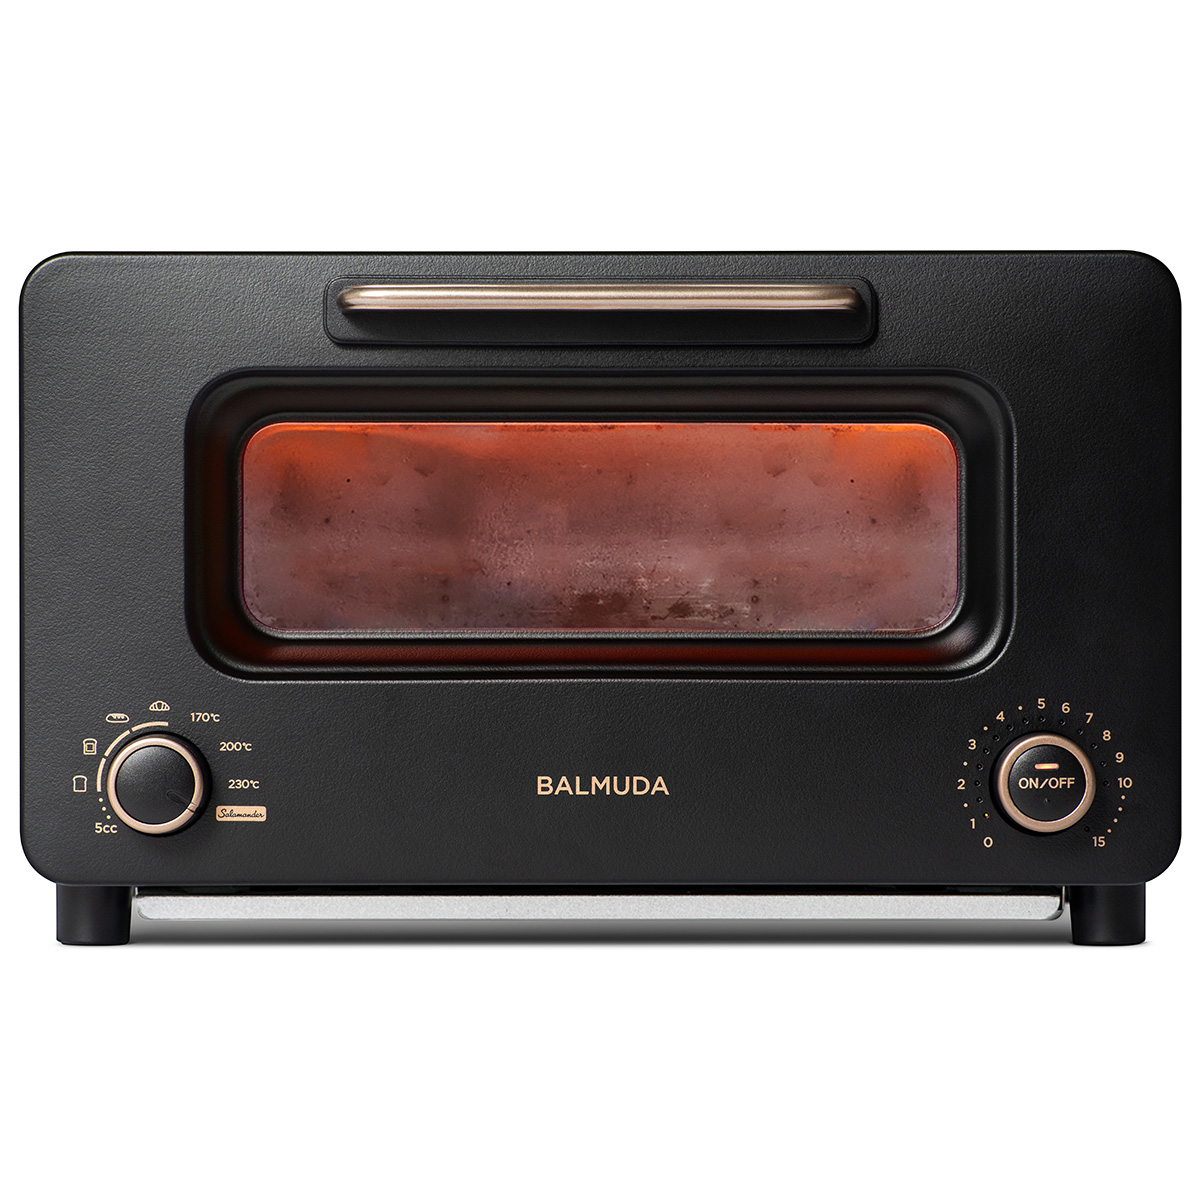 ひかりTVショッピング | [正規店]ザ・トースター プロ 30日間全額返金保証 サラマンダー BALMUDA The Toaster Pro